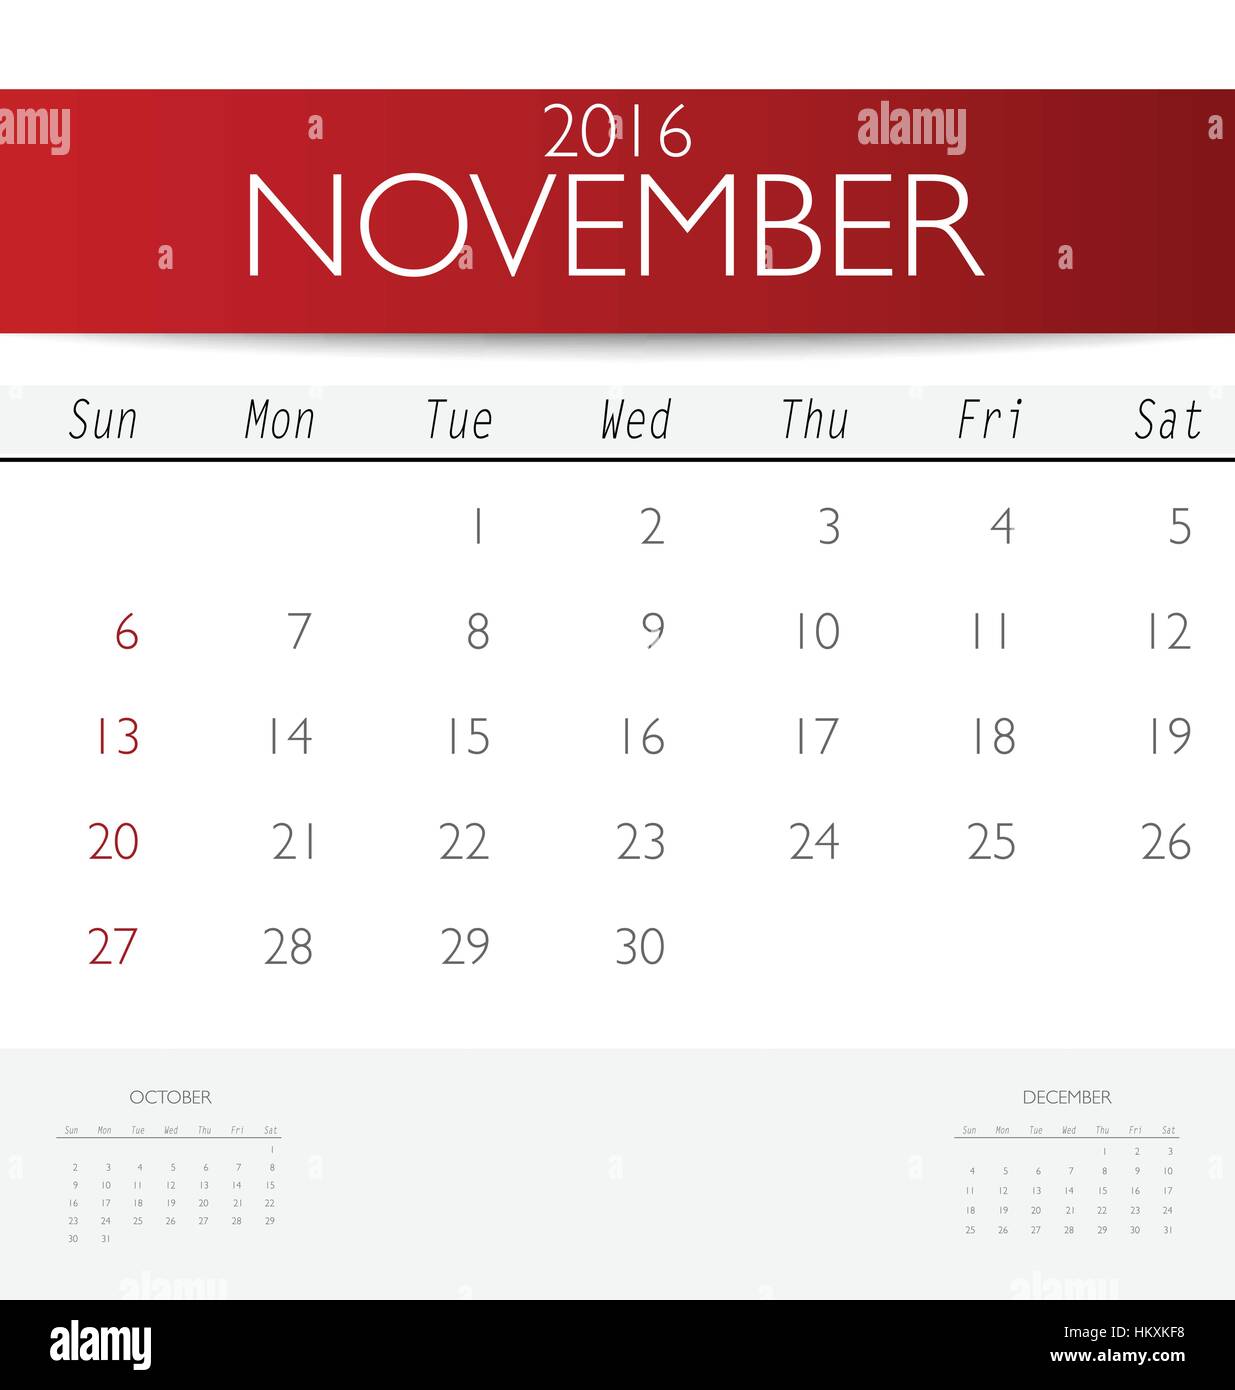 November Calendar 2016 Template from c8.alamy.com